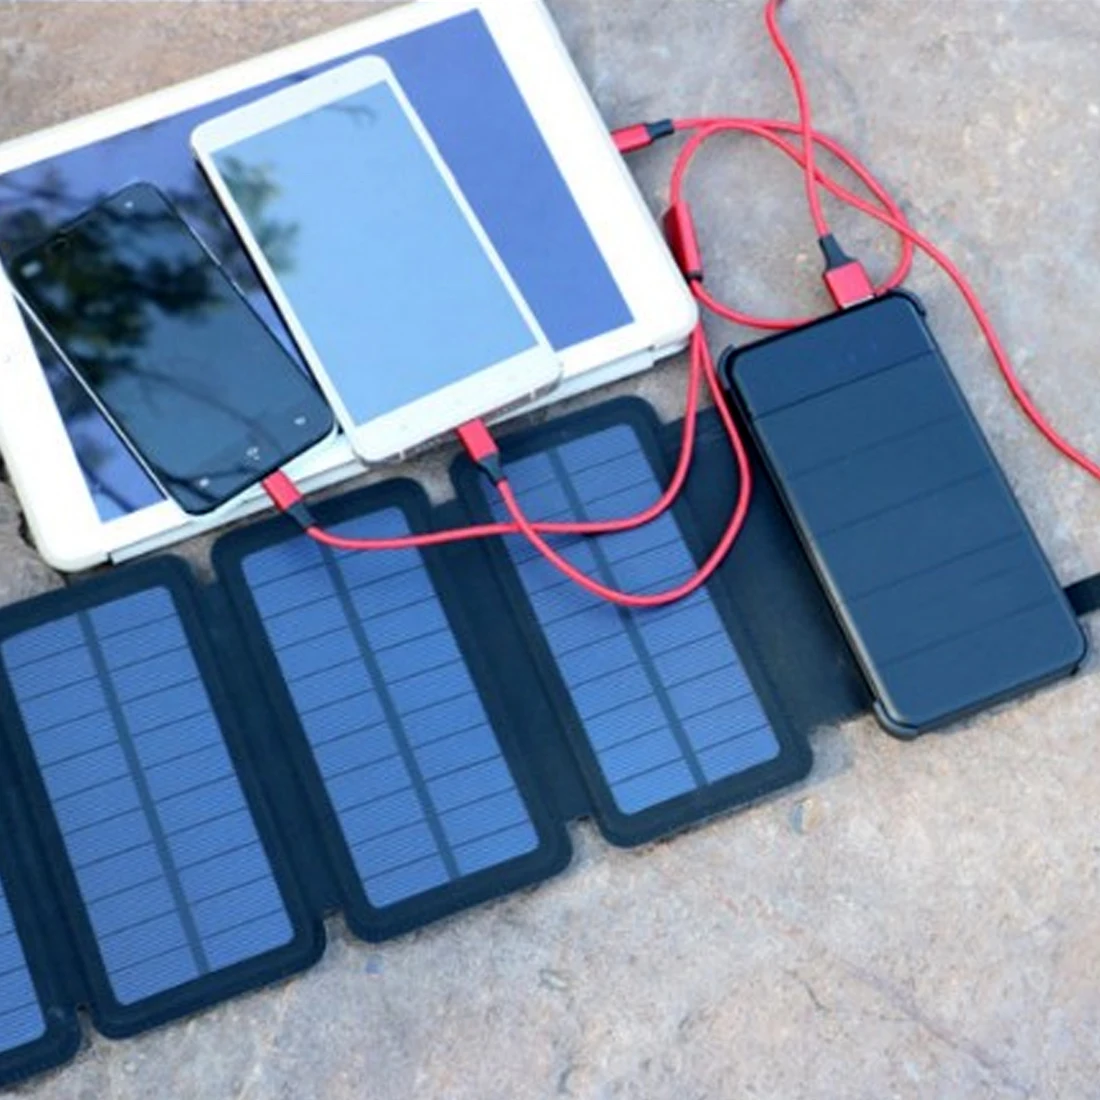 20000 мАч портативный складной солнечный банк питания Солнечная Панель зарядное устройство внешний резервный пакет для смартфона планшета